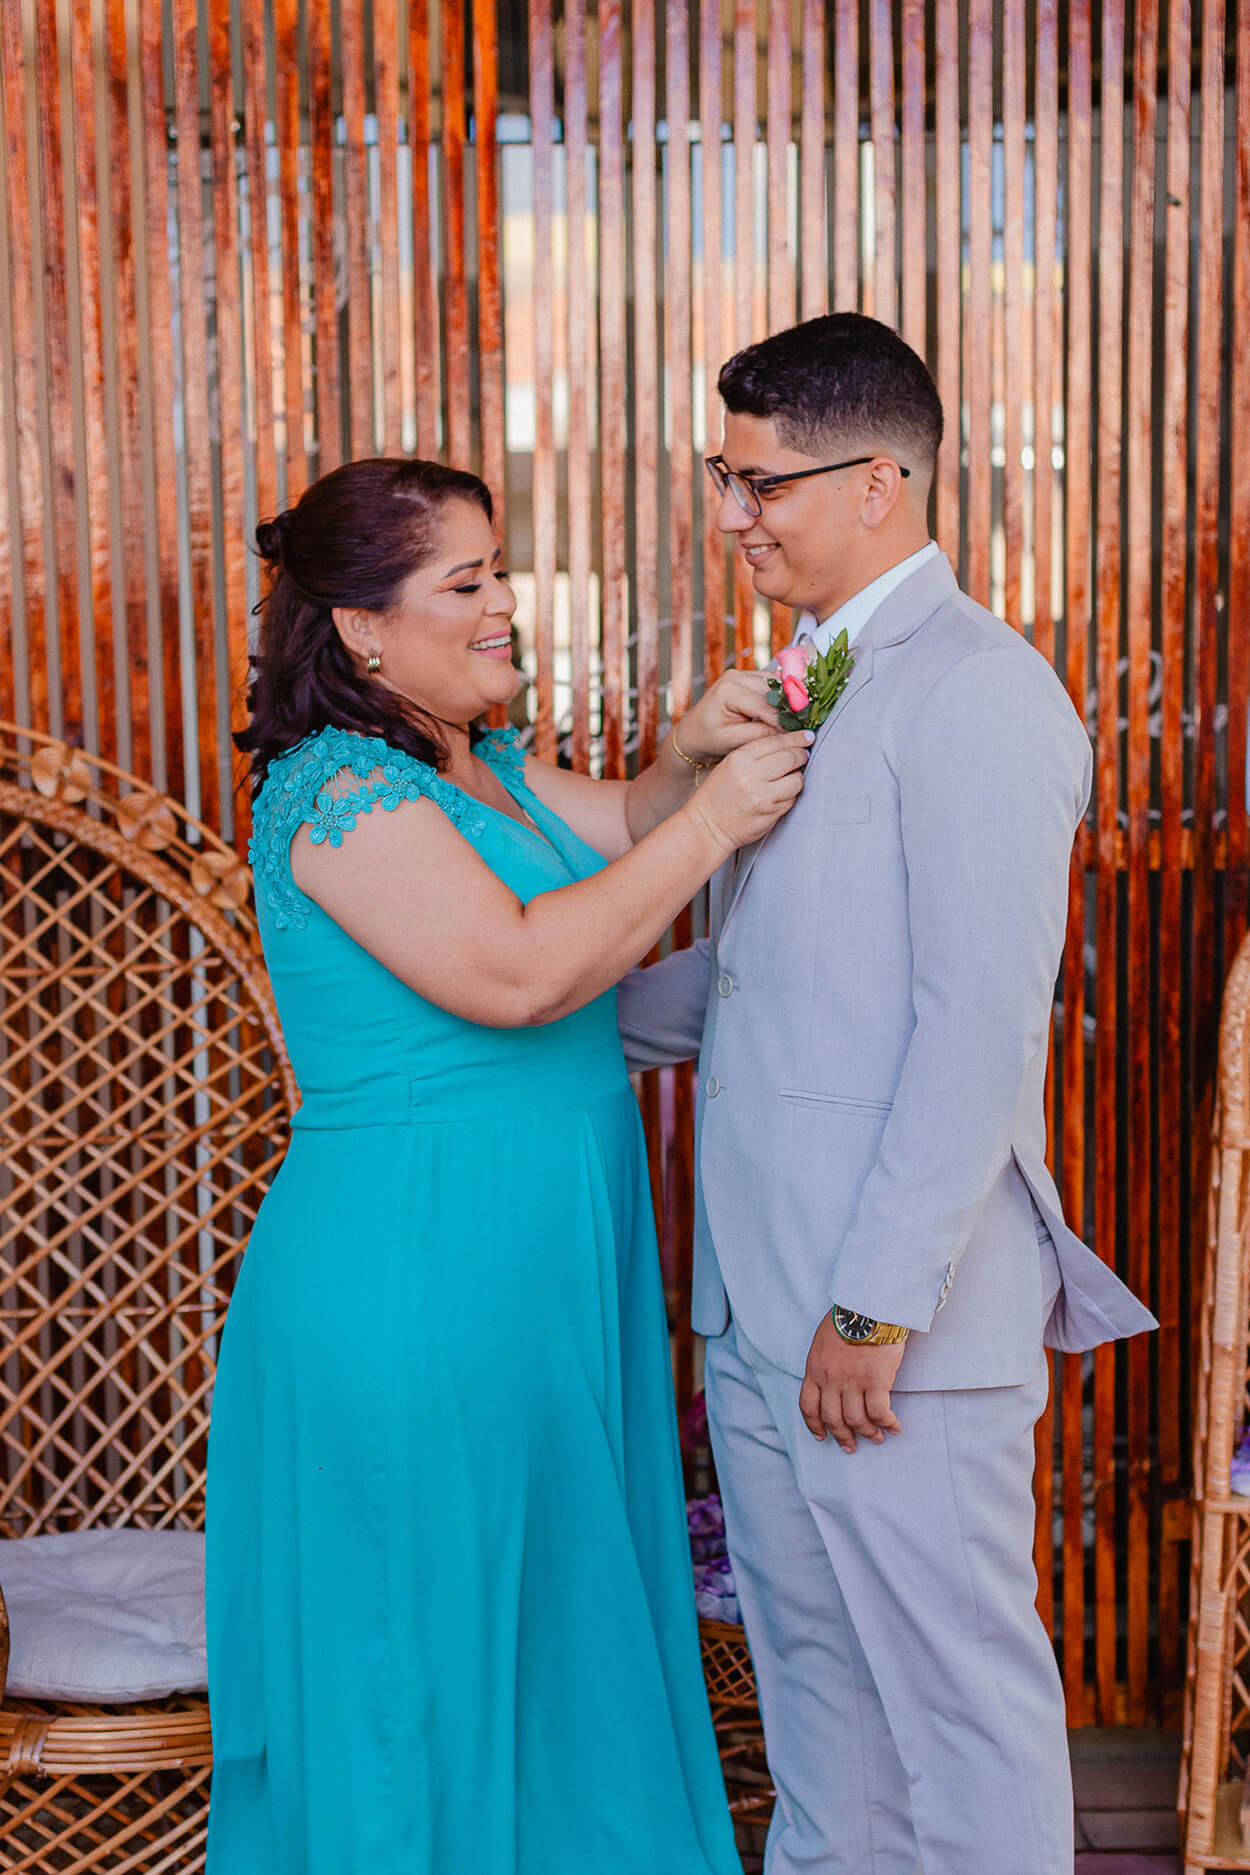 Mãe do noivo com vestido azul turquesa ajustando o terno do noivo